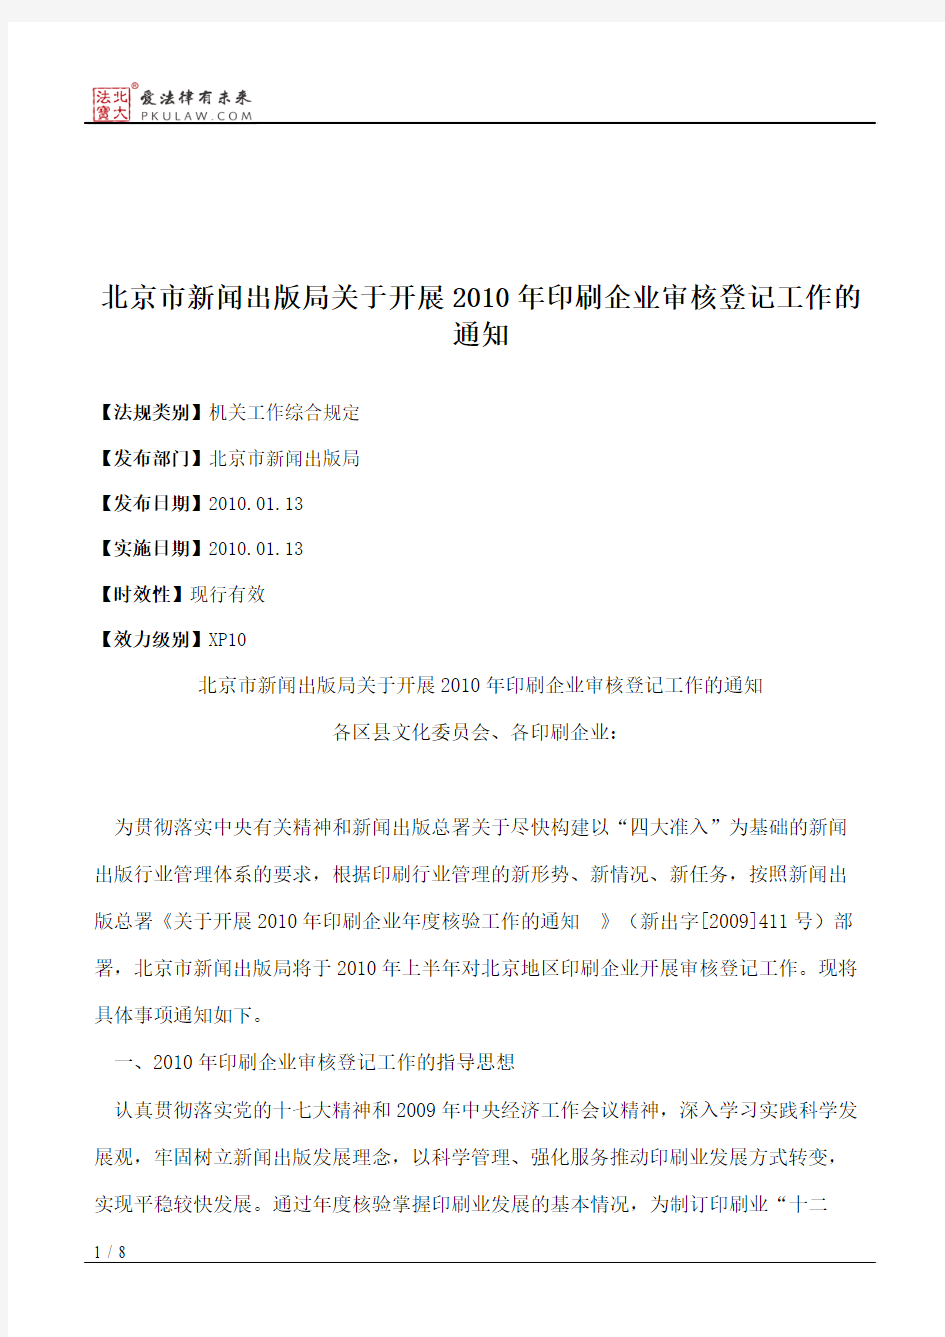 北京市新闻出版局关于开展2010年印刷企业审核登记工作的通知